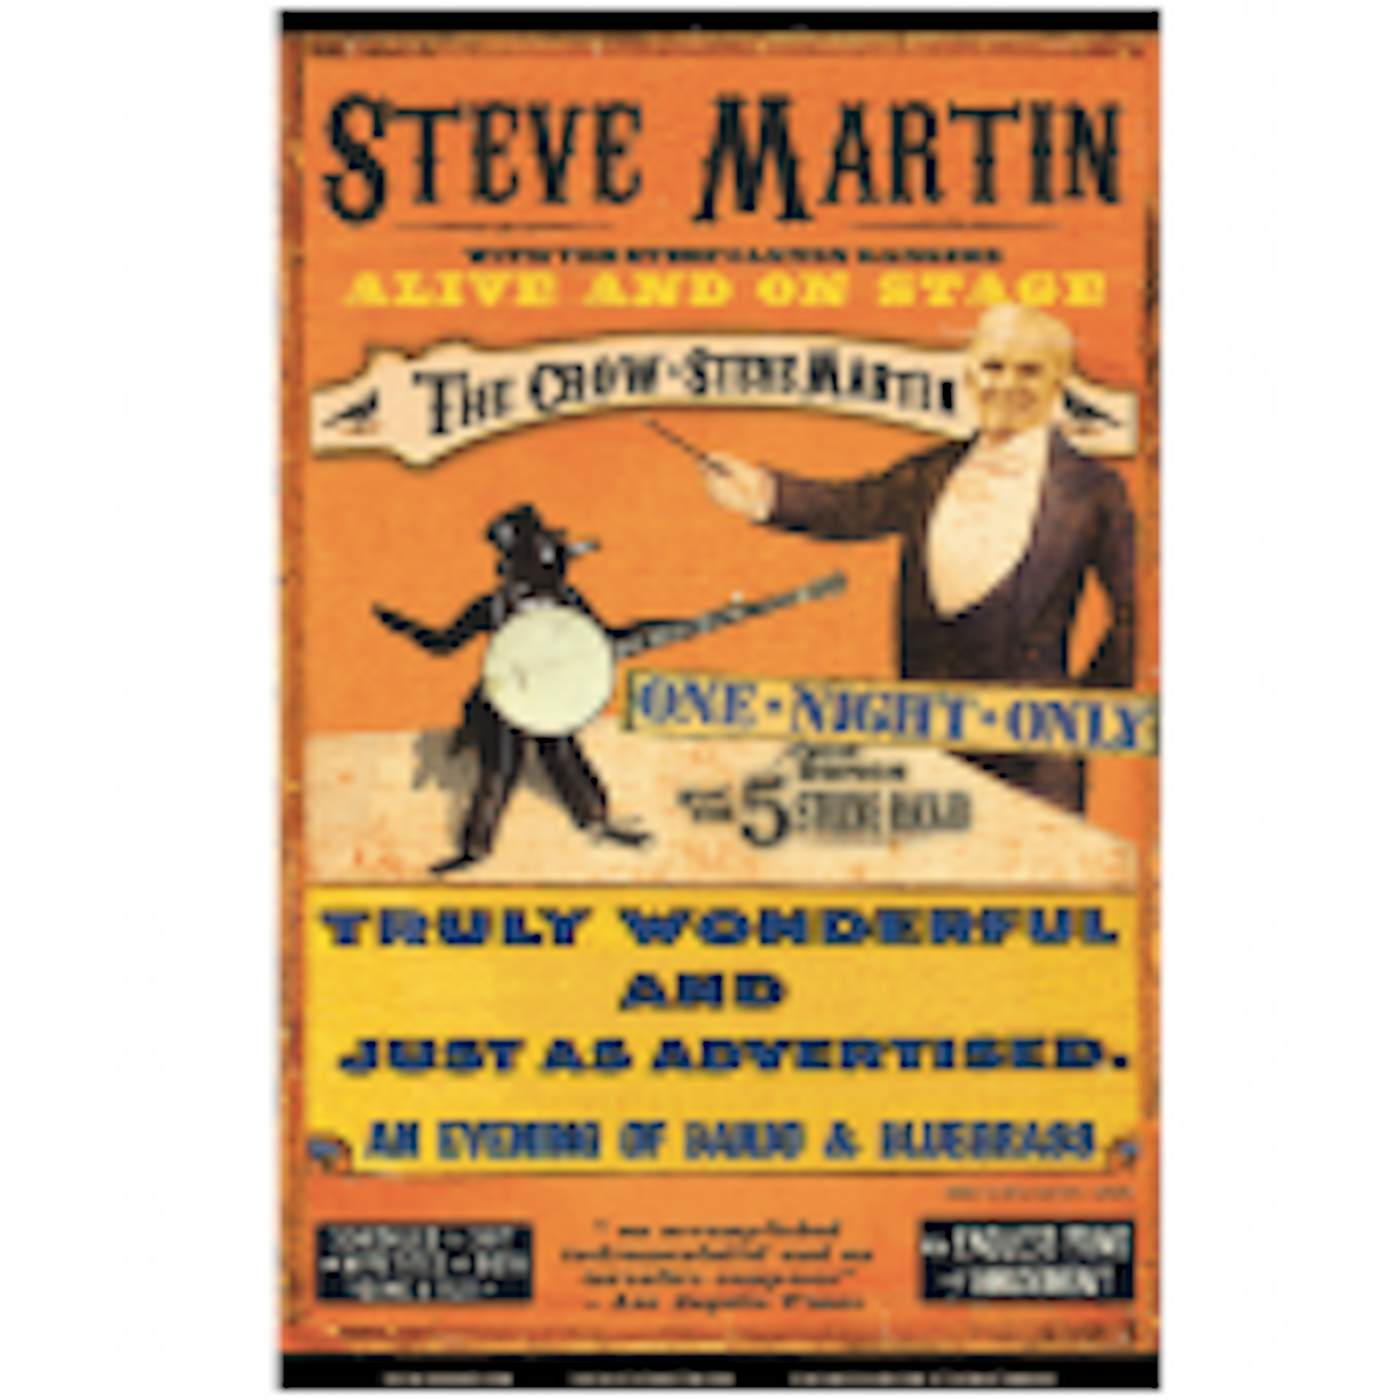 Steve Martin Tour Poster